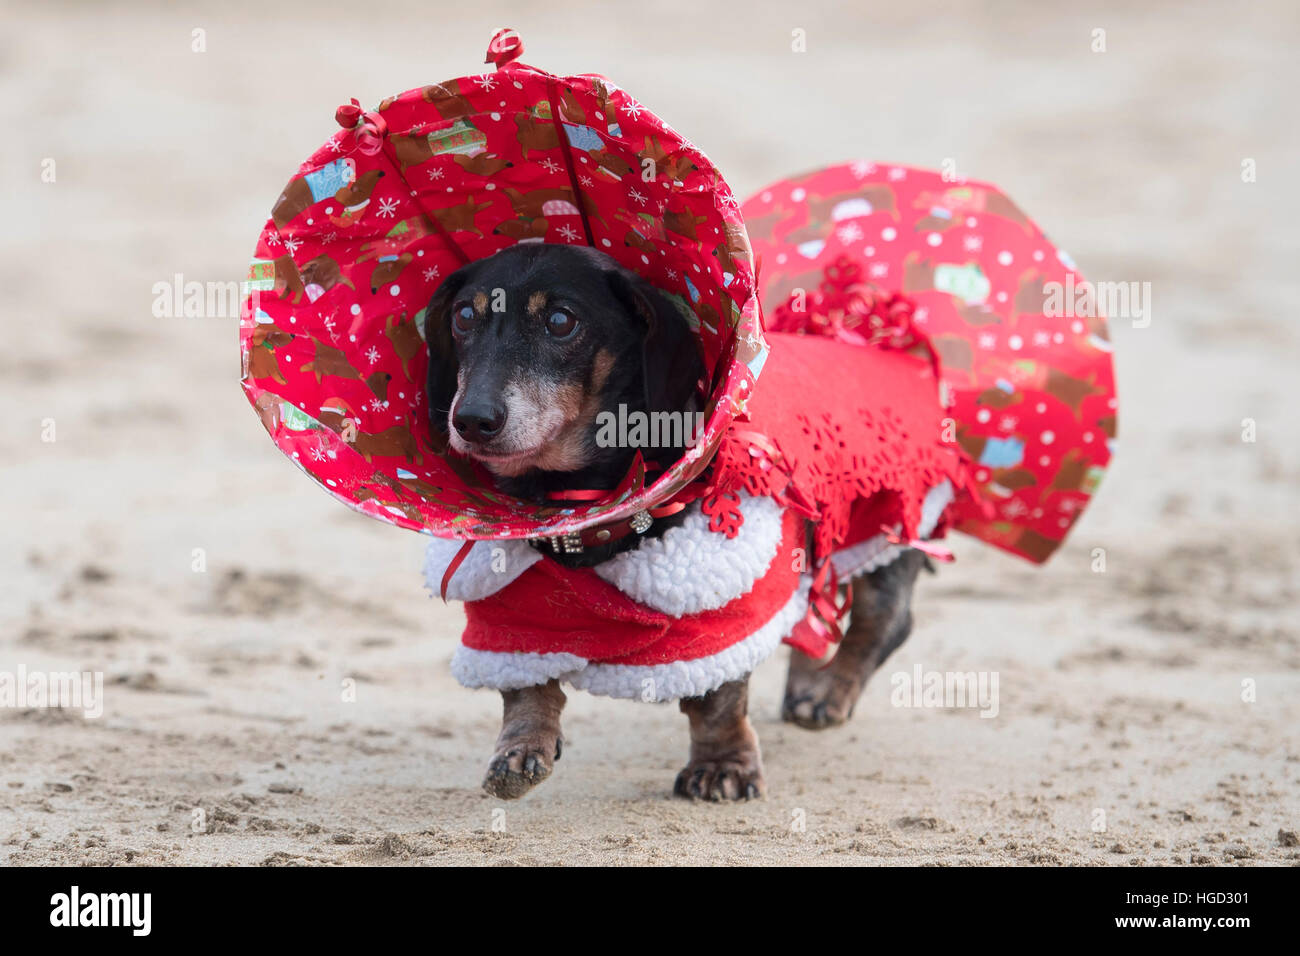 Un teckel chien habillé en robe de soirée comme un noël à Noël à Whitmore, barry dans la baie de Cardiff, Pays de Galles, Royaume-Uni. Banque D'Images